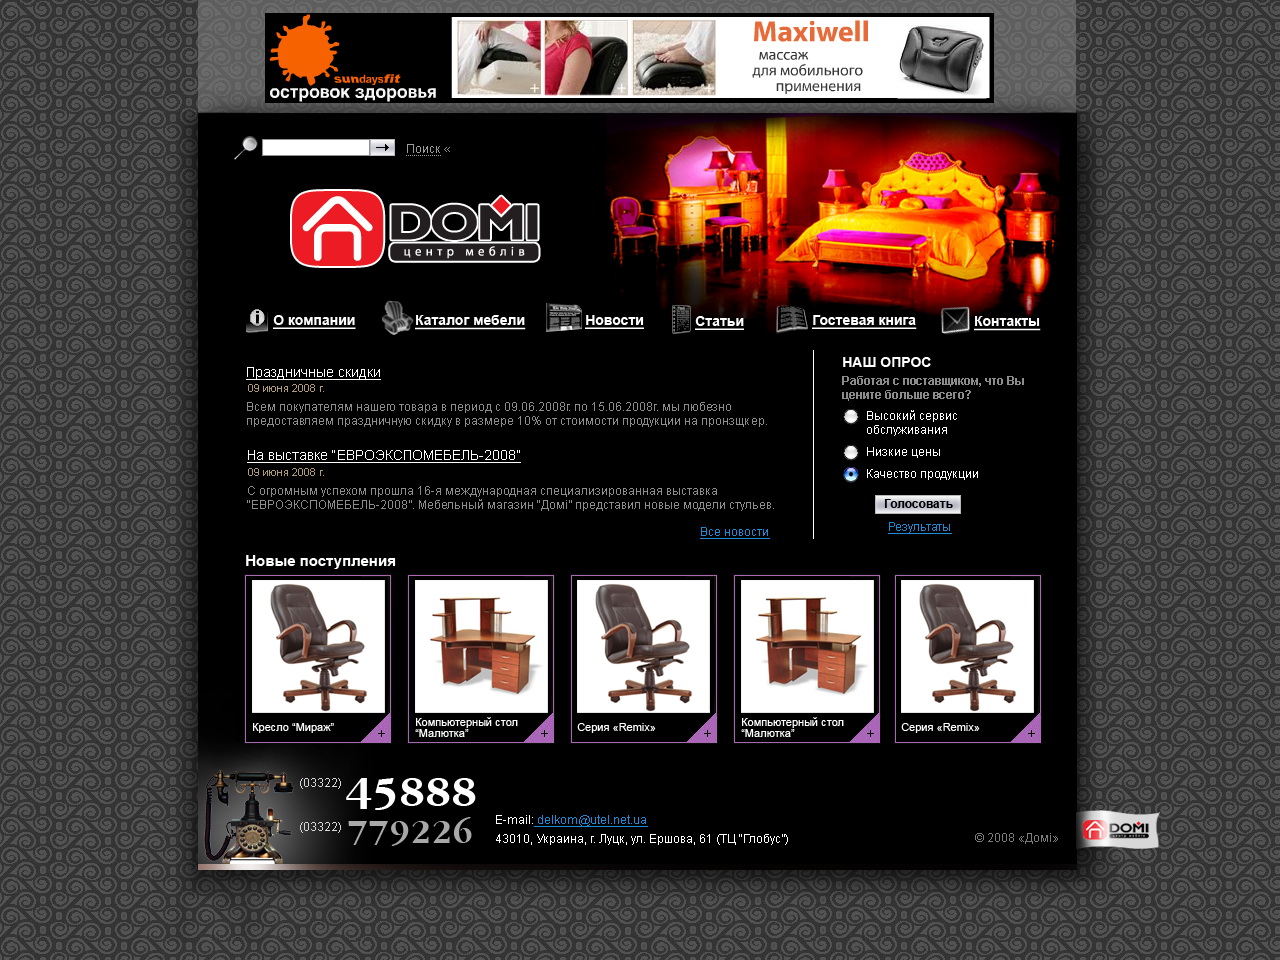 макет сайта мебельного магазина "Доми"